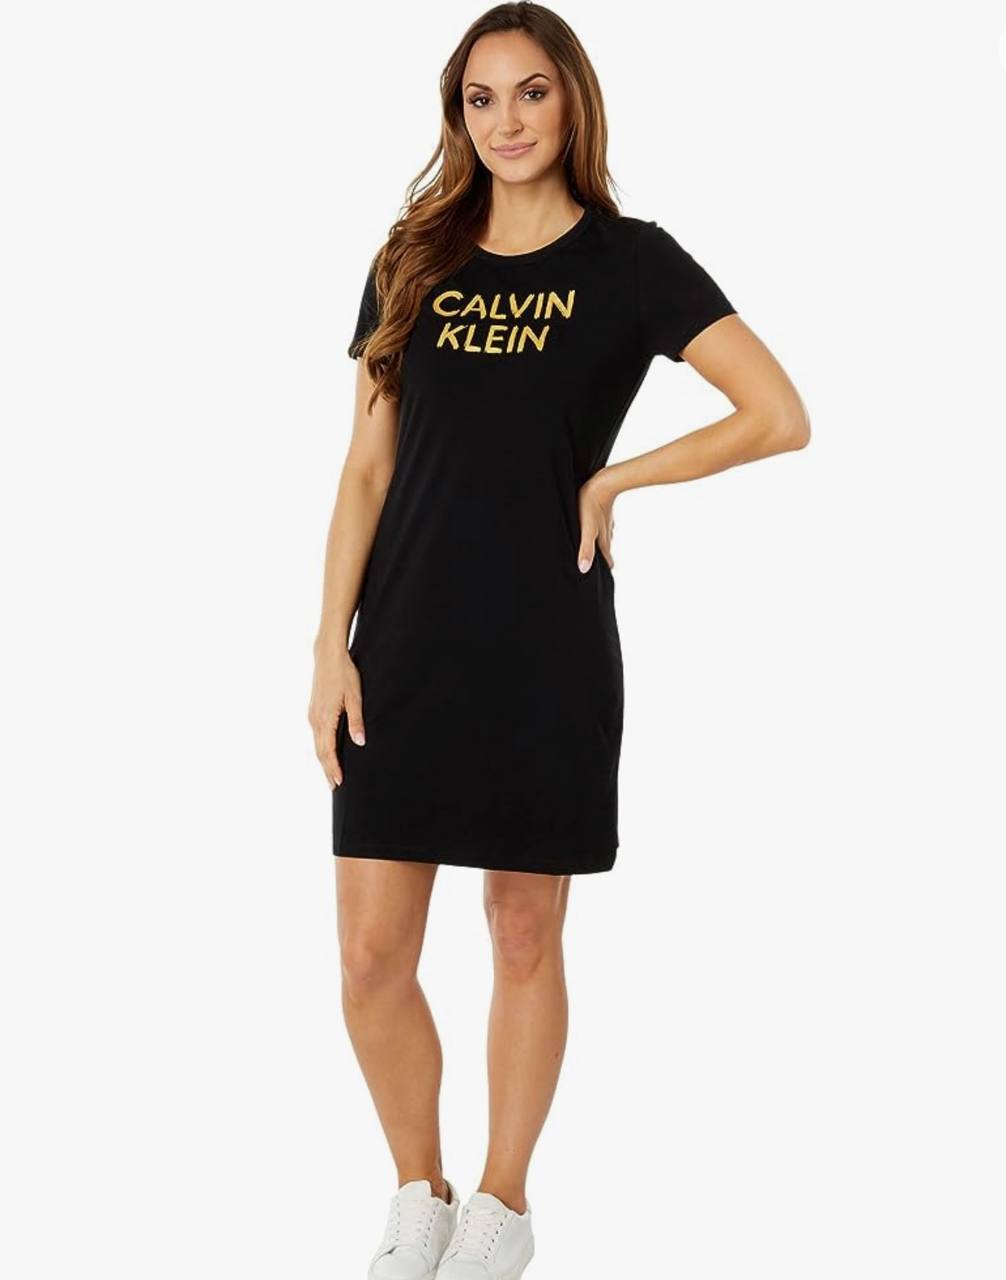 Calvin Klein dress shirt